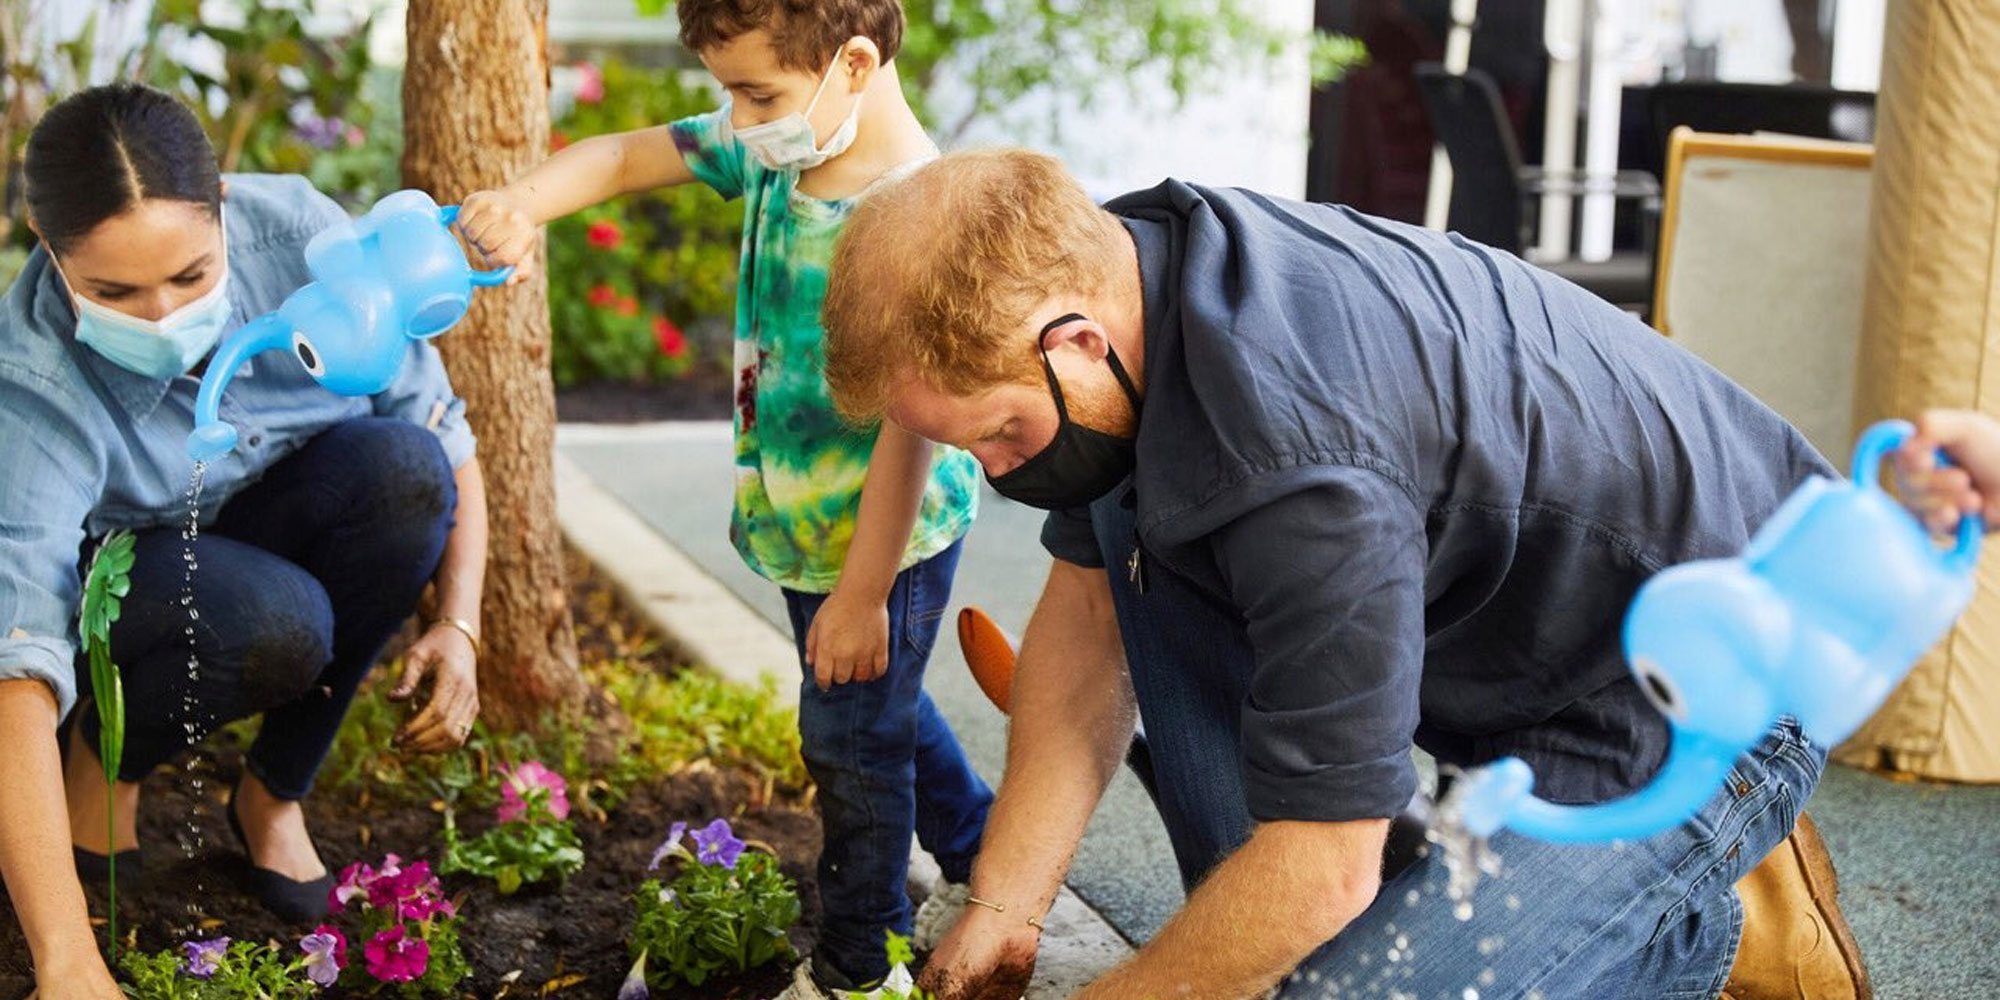 El Príncipe Harry y Meghan Markle, dos jardineros solidarios entre niños para recordar a Lady Di